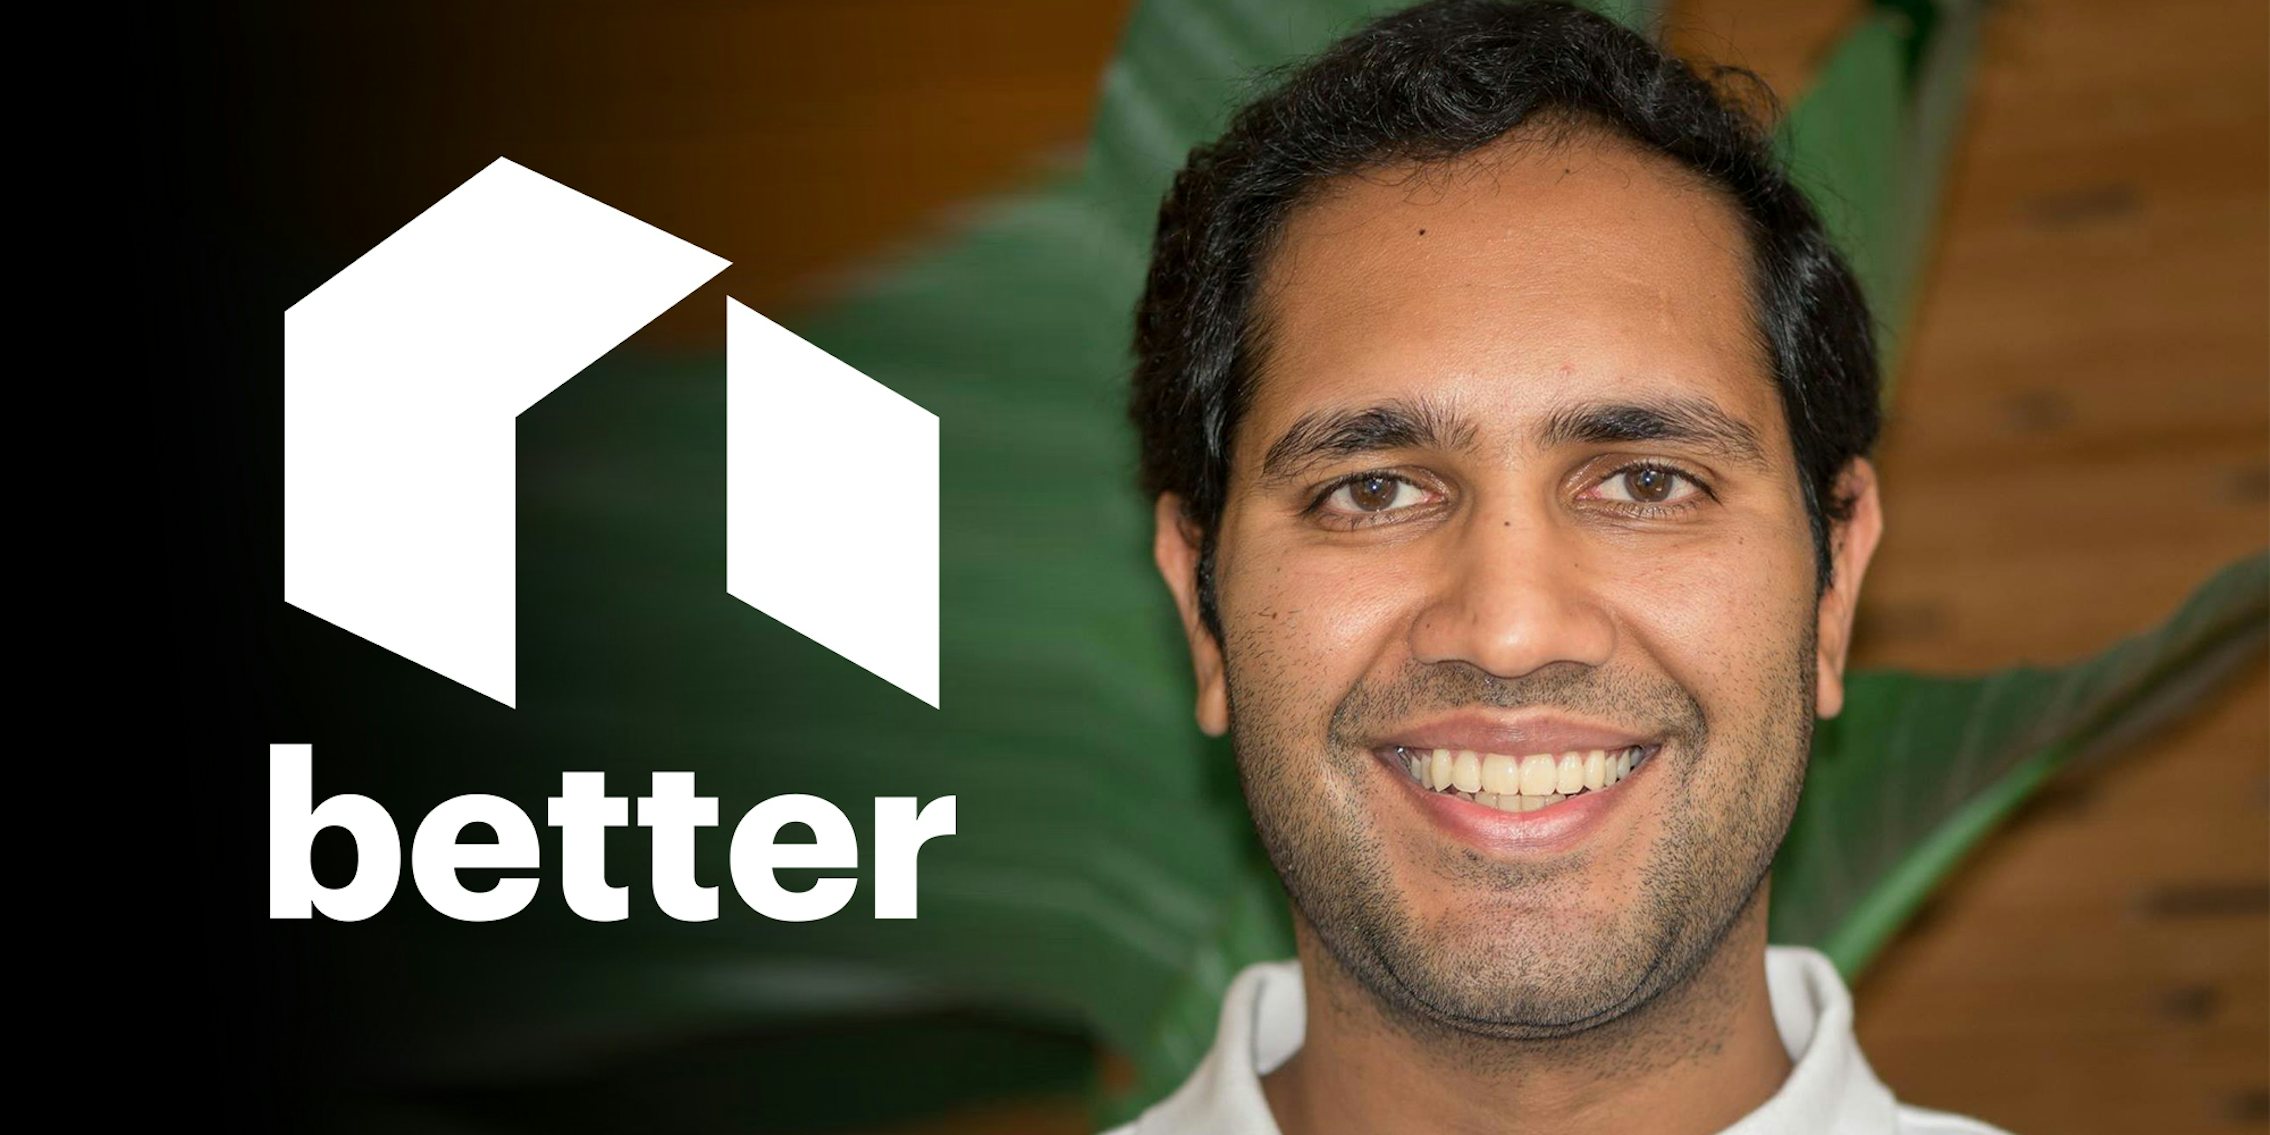 better.com CEO Vishal Garg